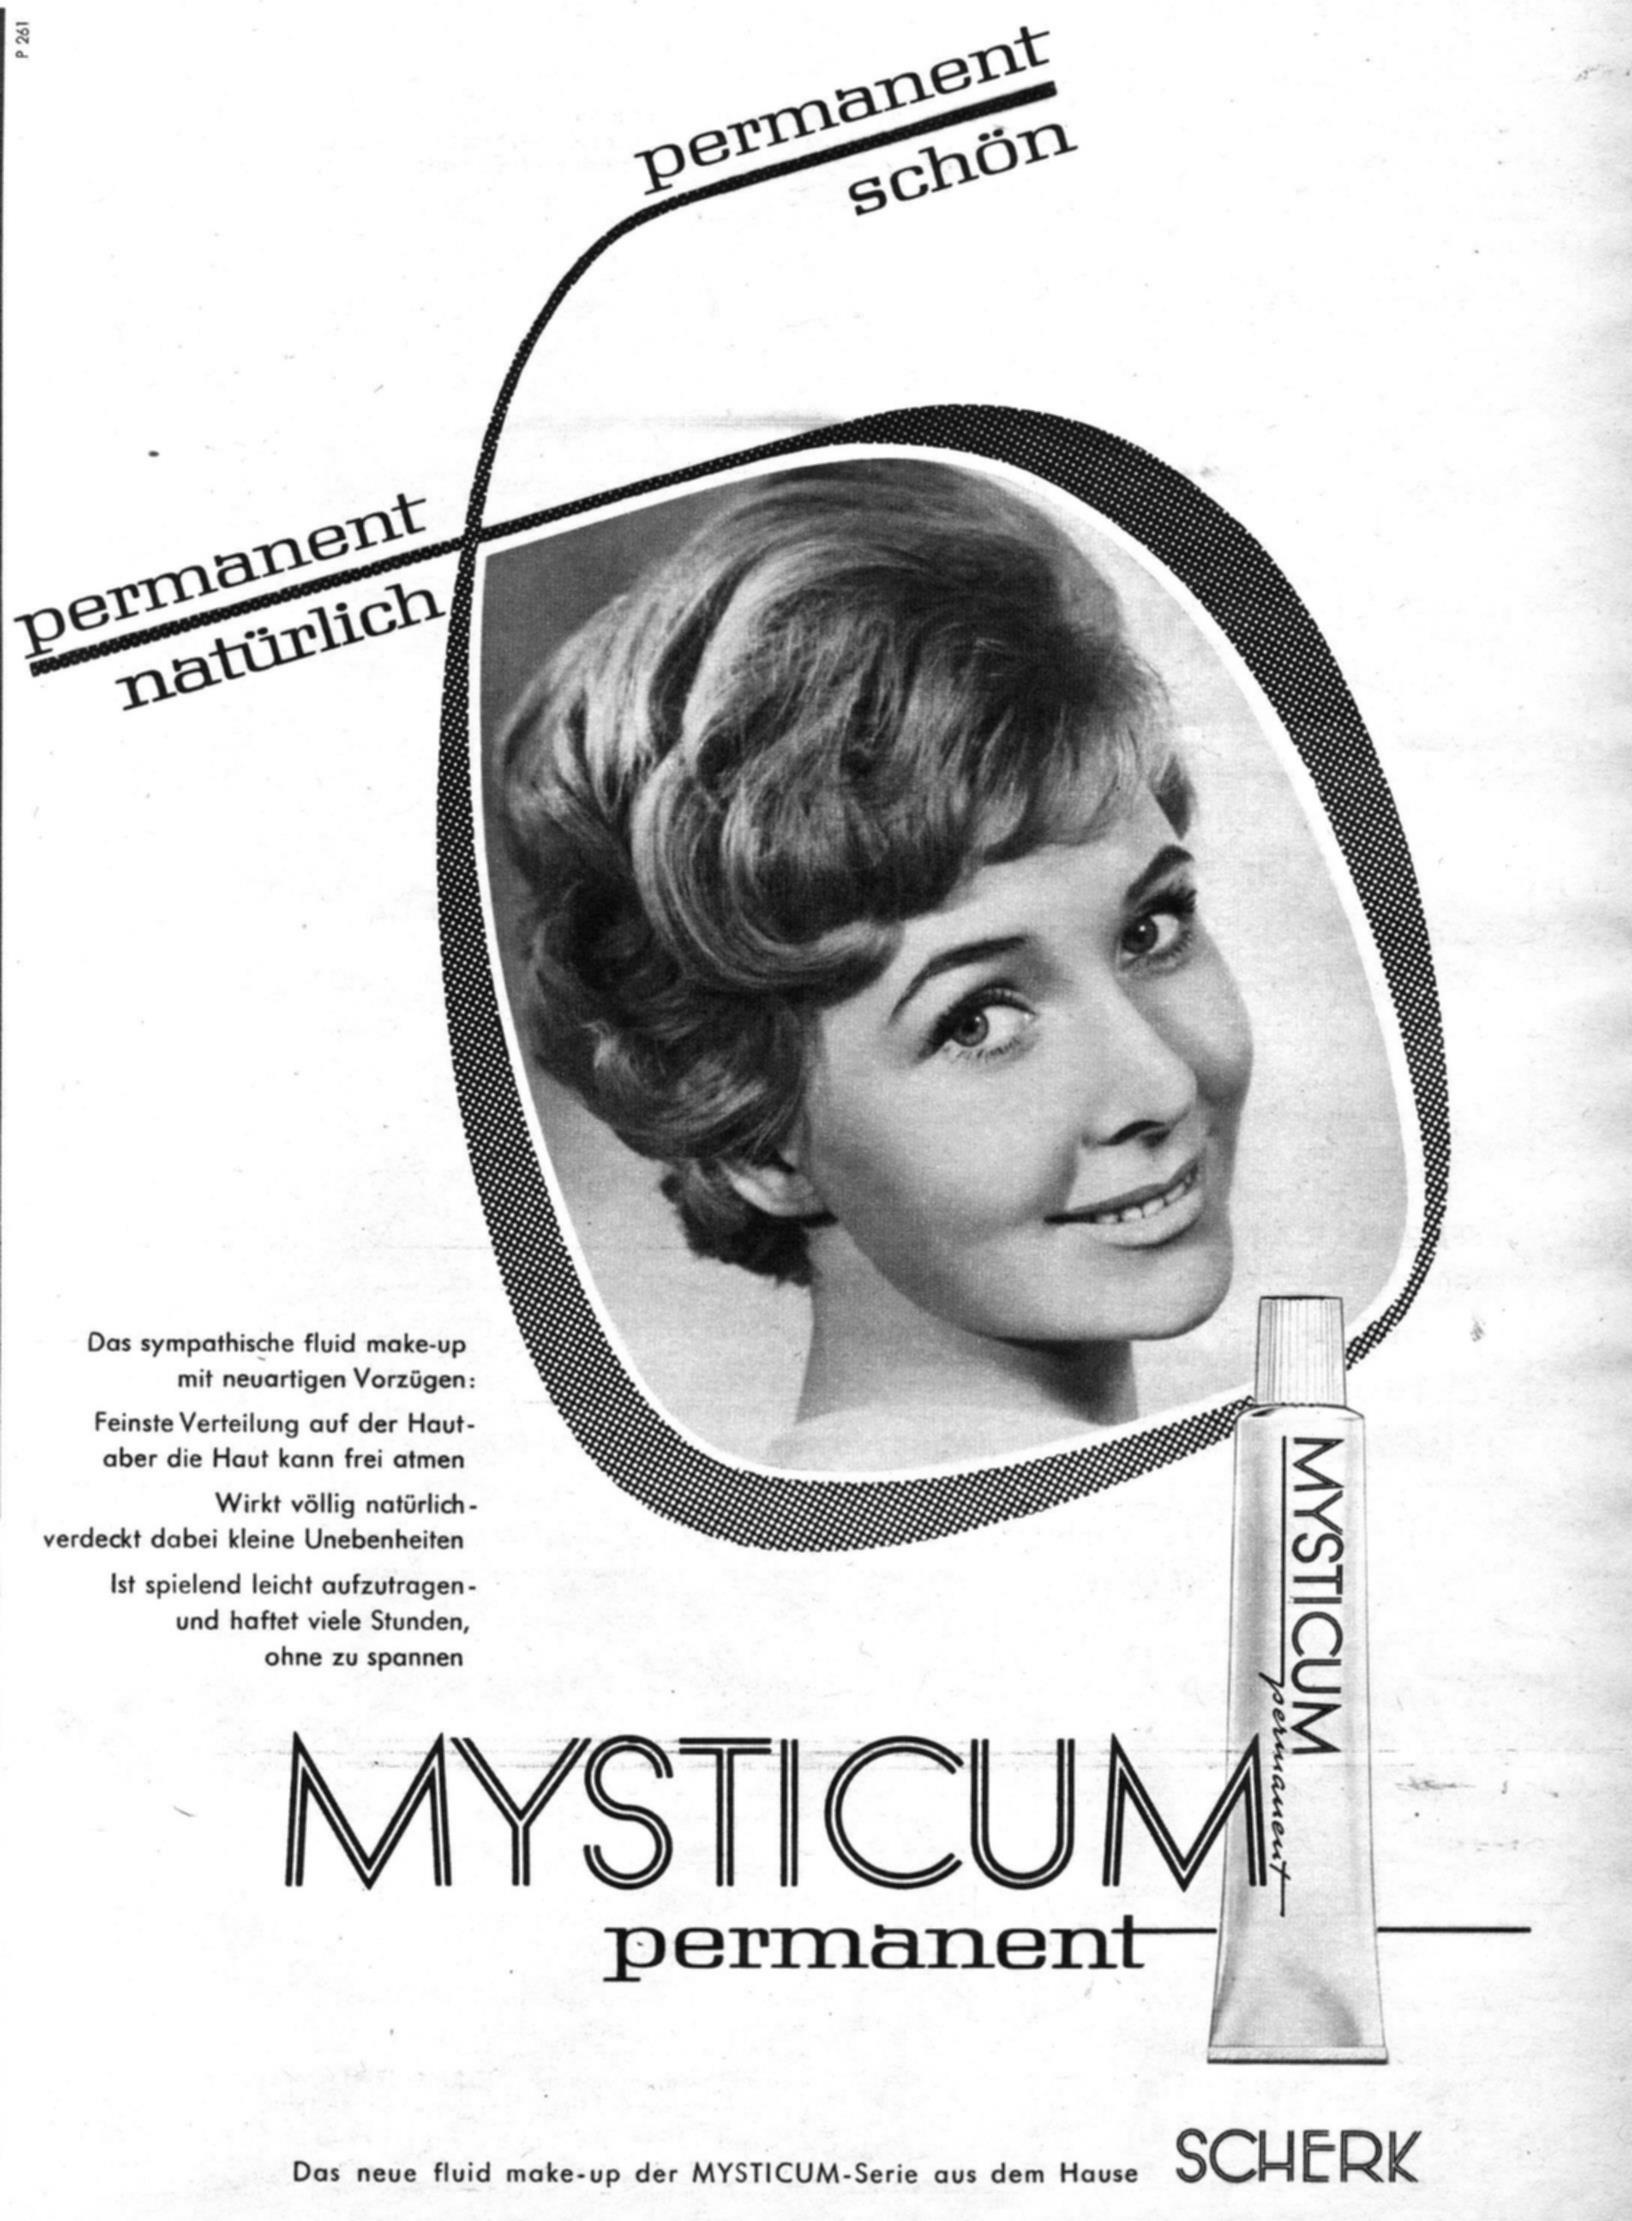 Mysricum 1961 596.jpg